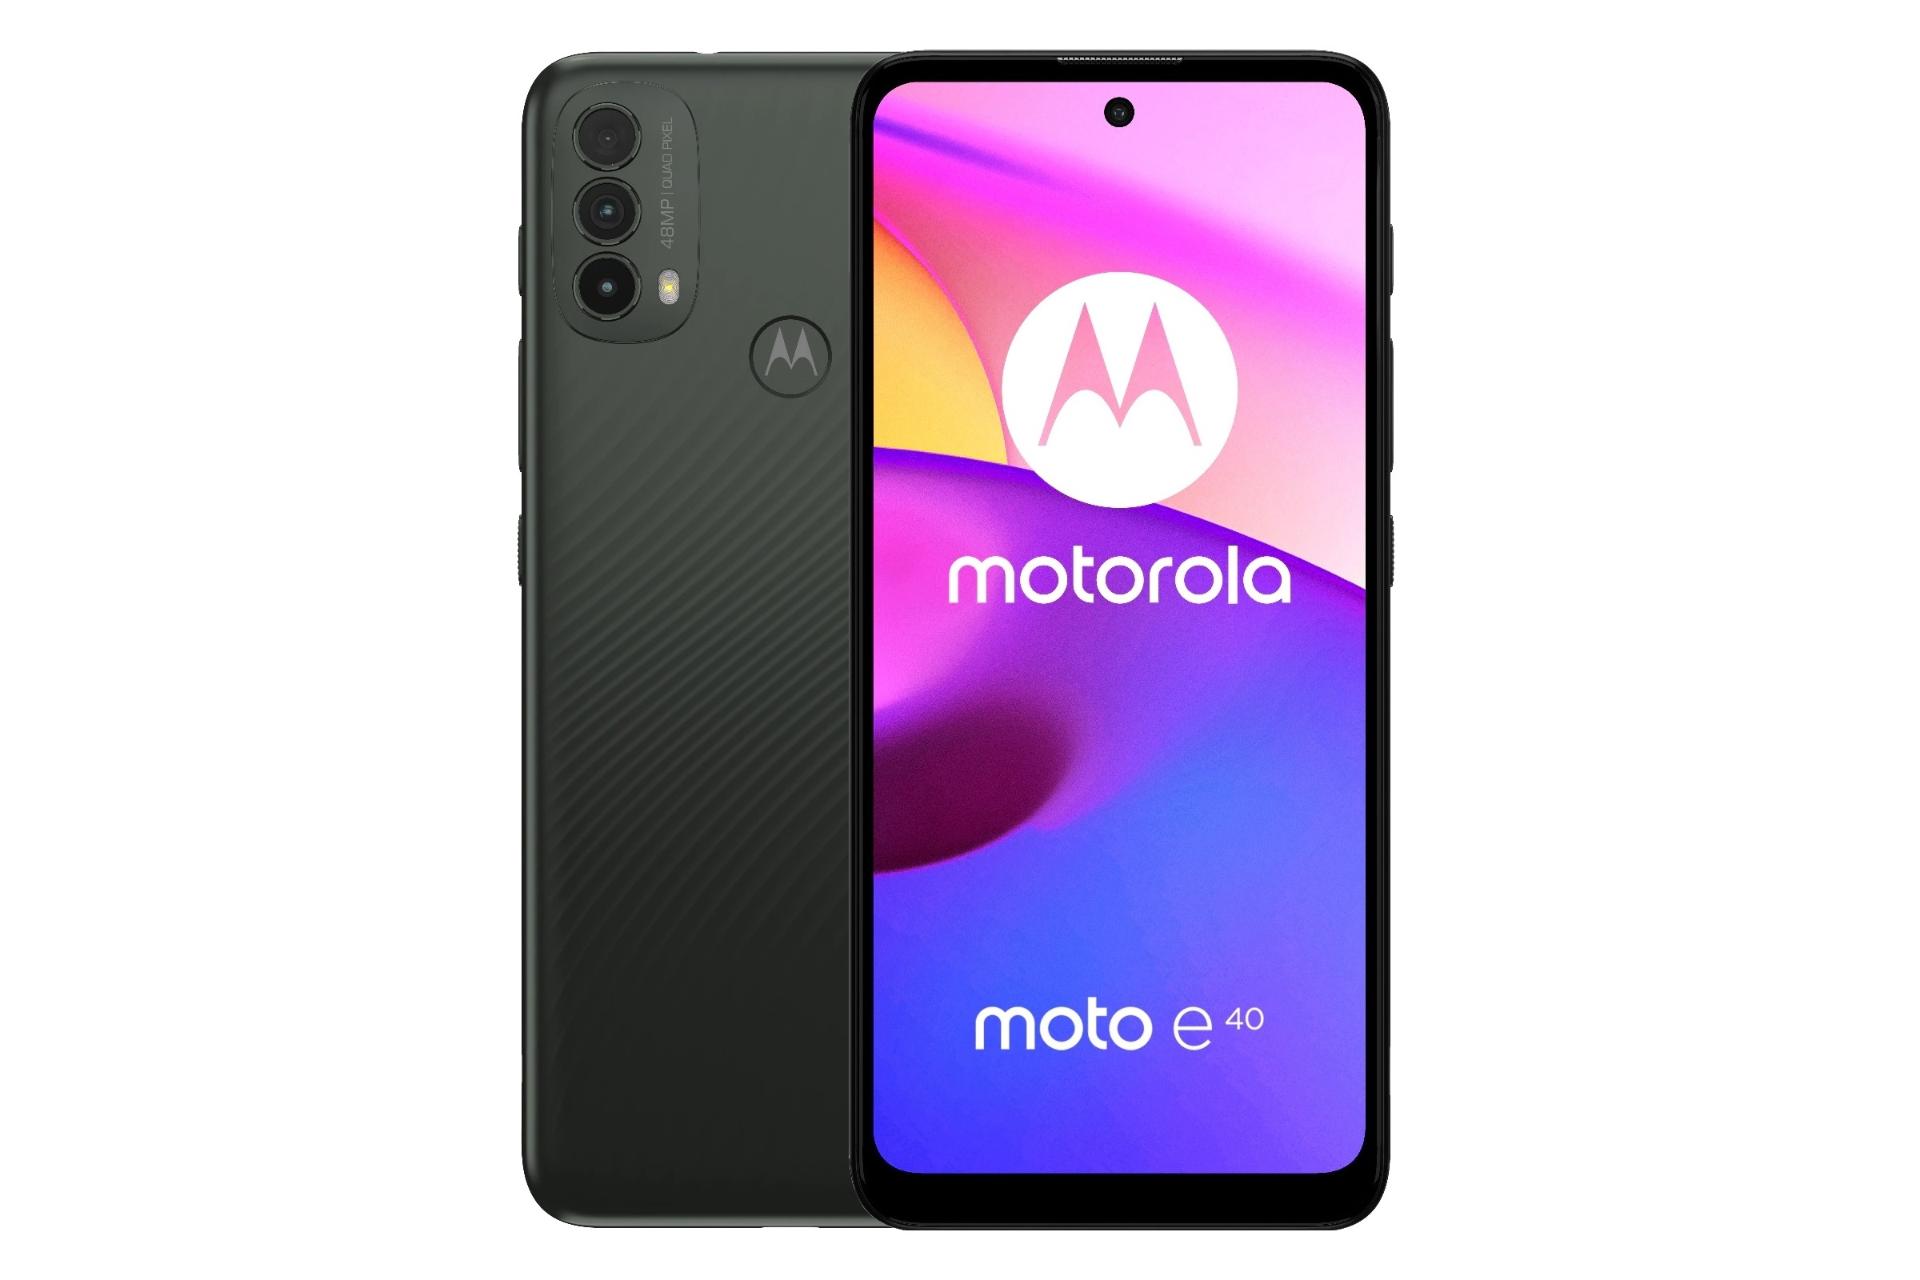 گوشی موبایل موتو ای 40 موتورولا / Motorola Moto E40 مشکی